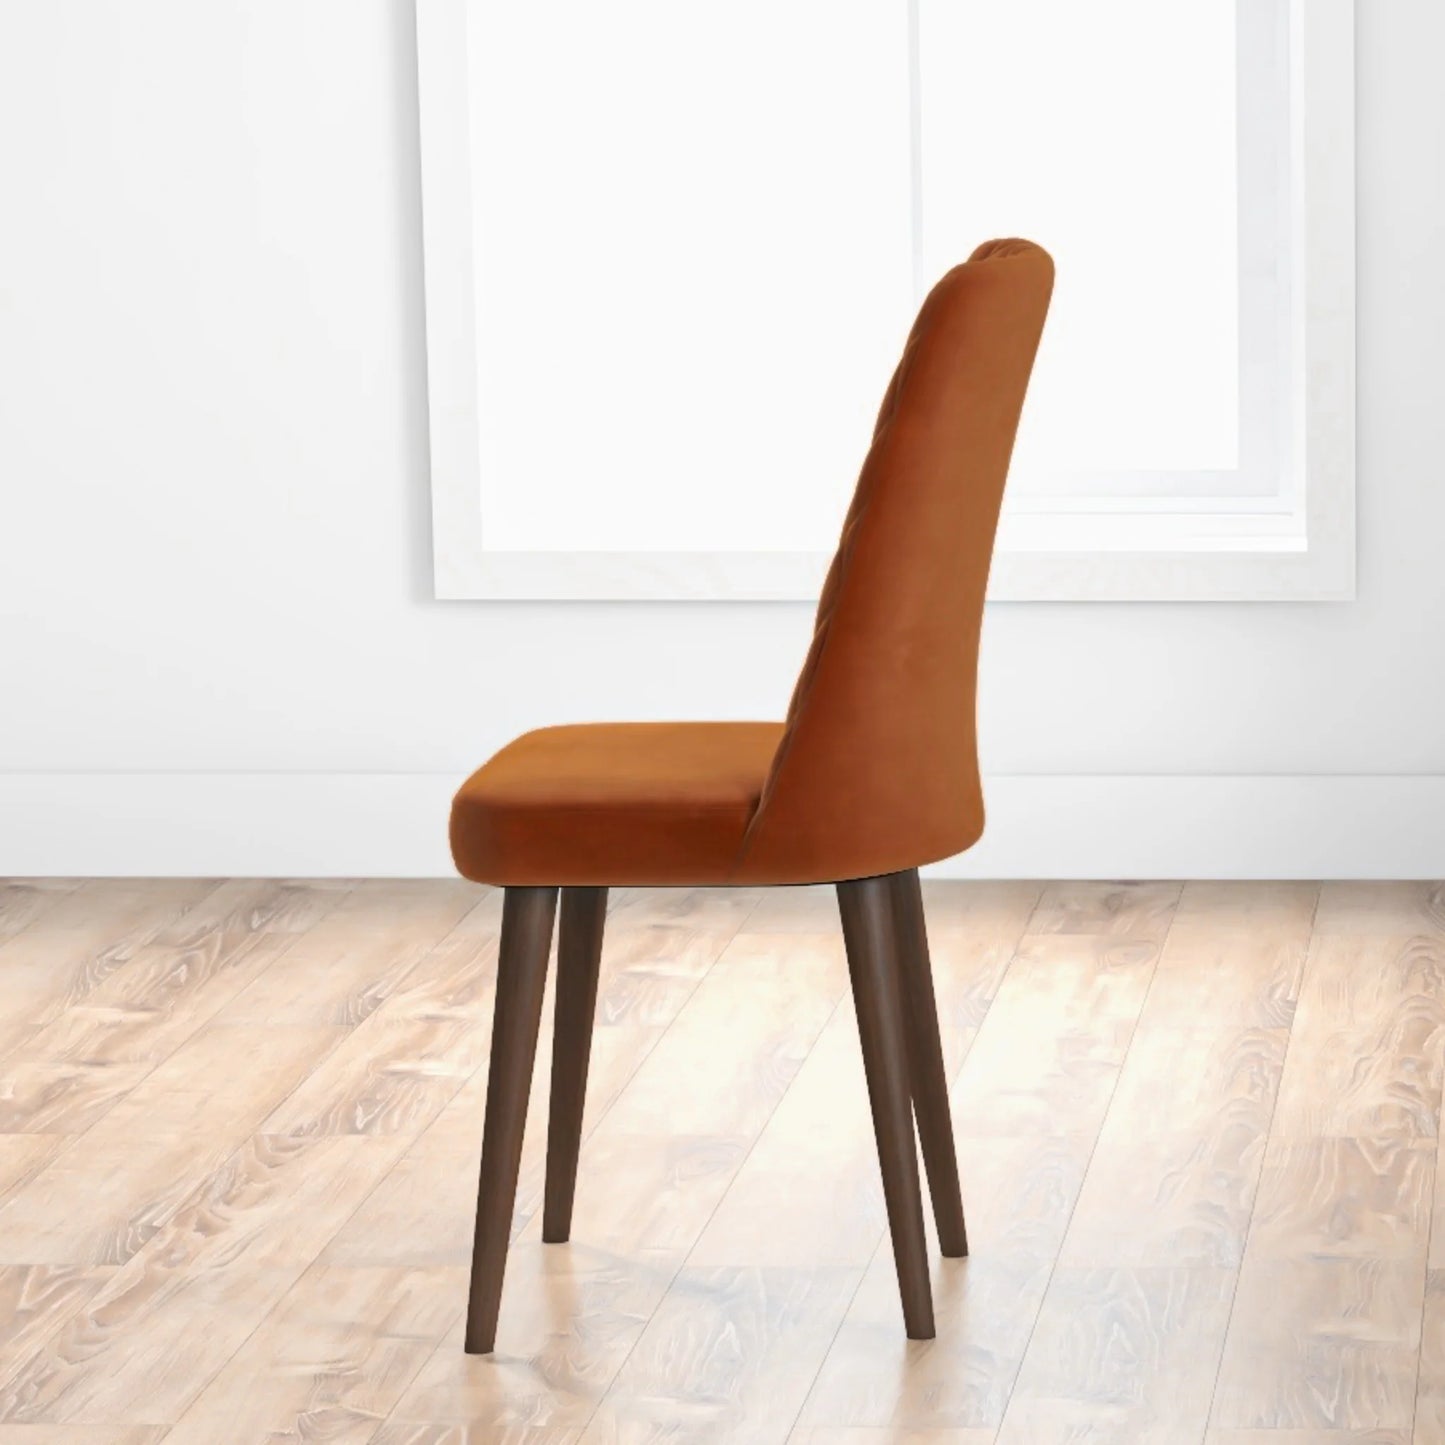 Evette Modern Burnt Orange Dining Chair